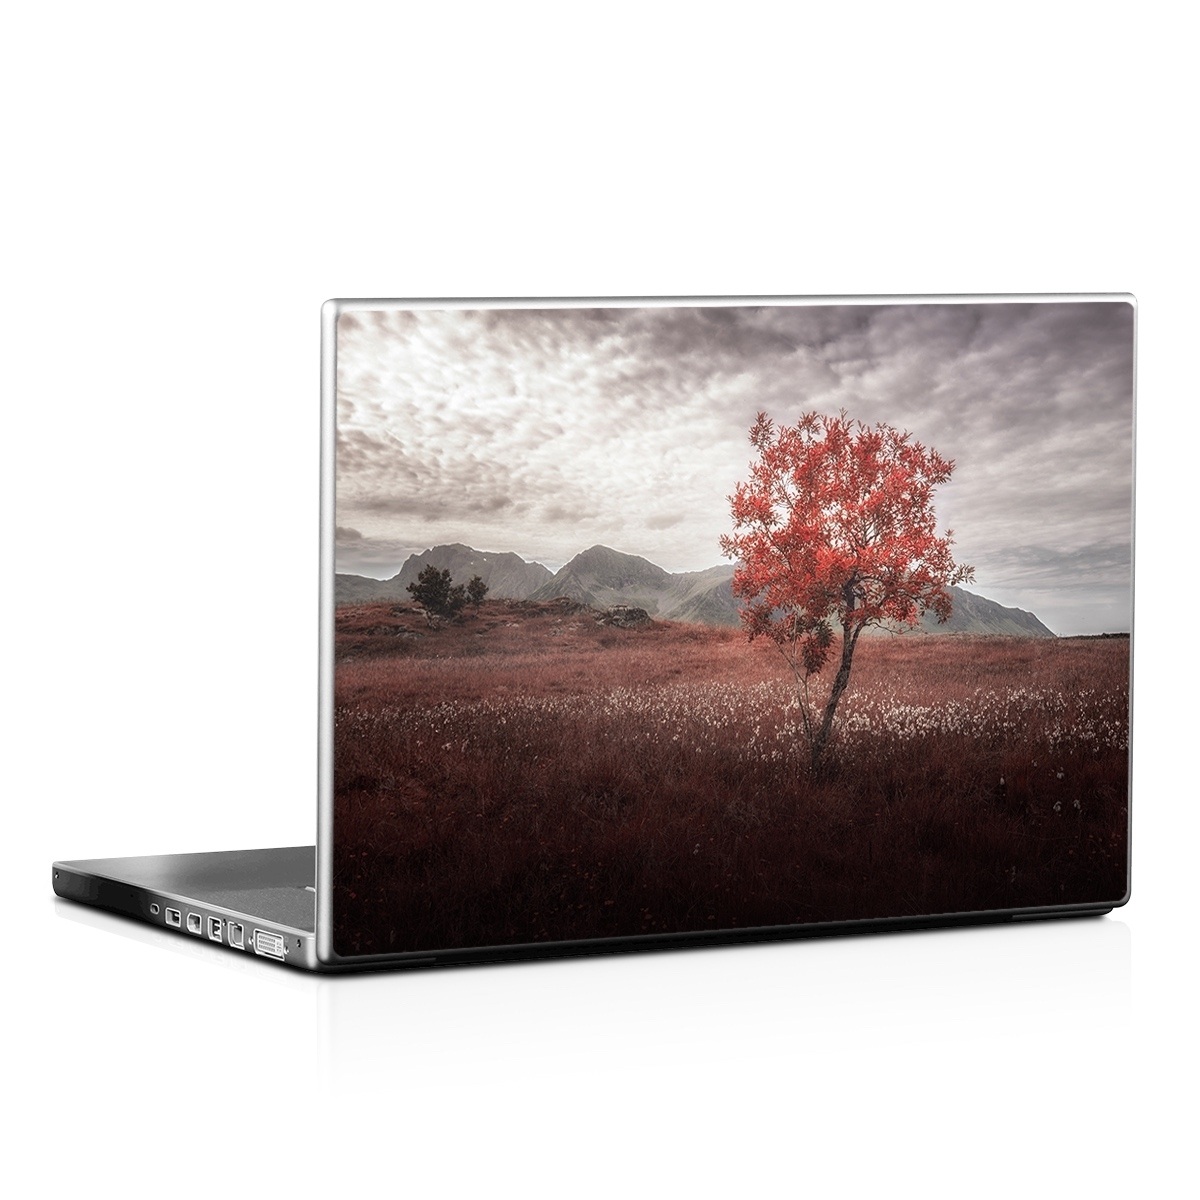 Laptop Skin - Lofoten Tree (Image 1)